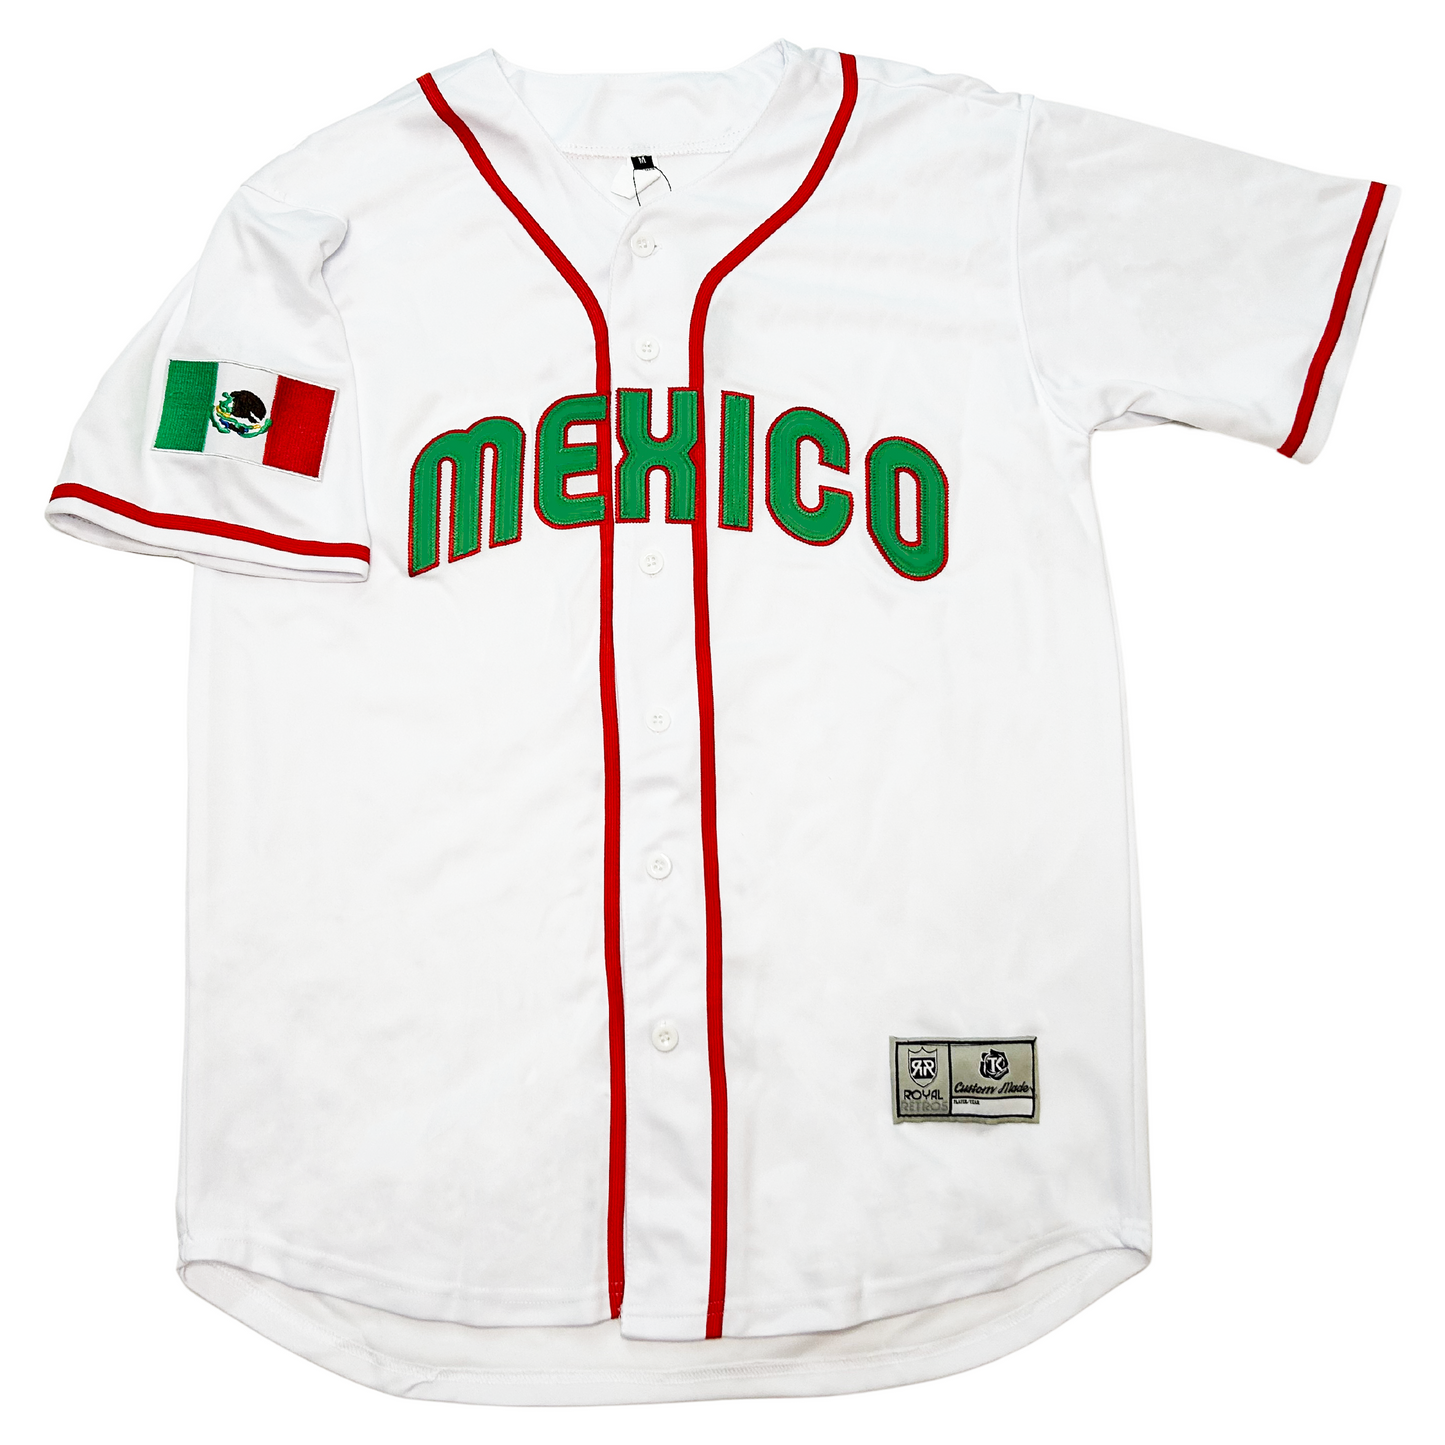 Mexico Baseball Jersey